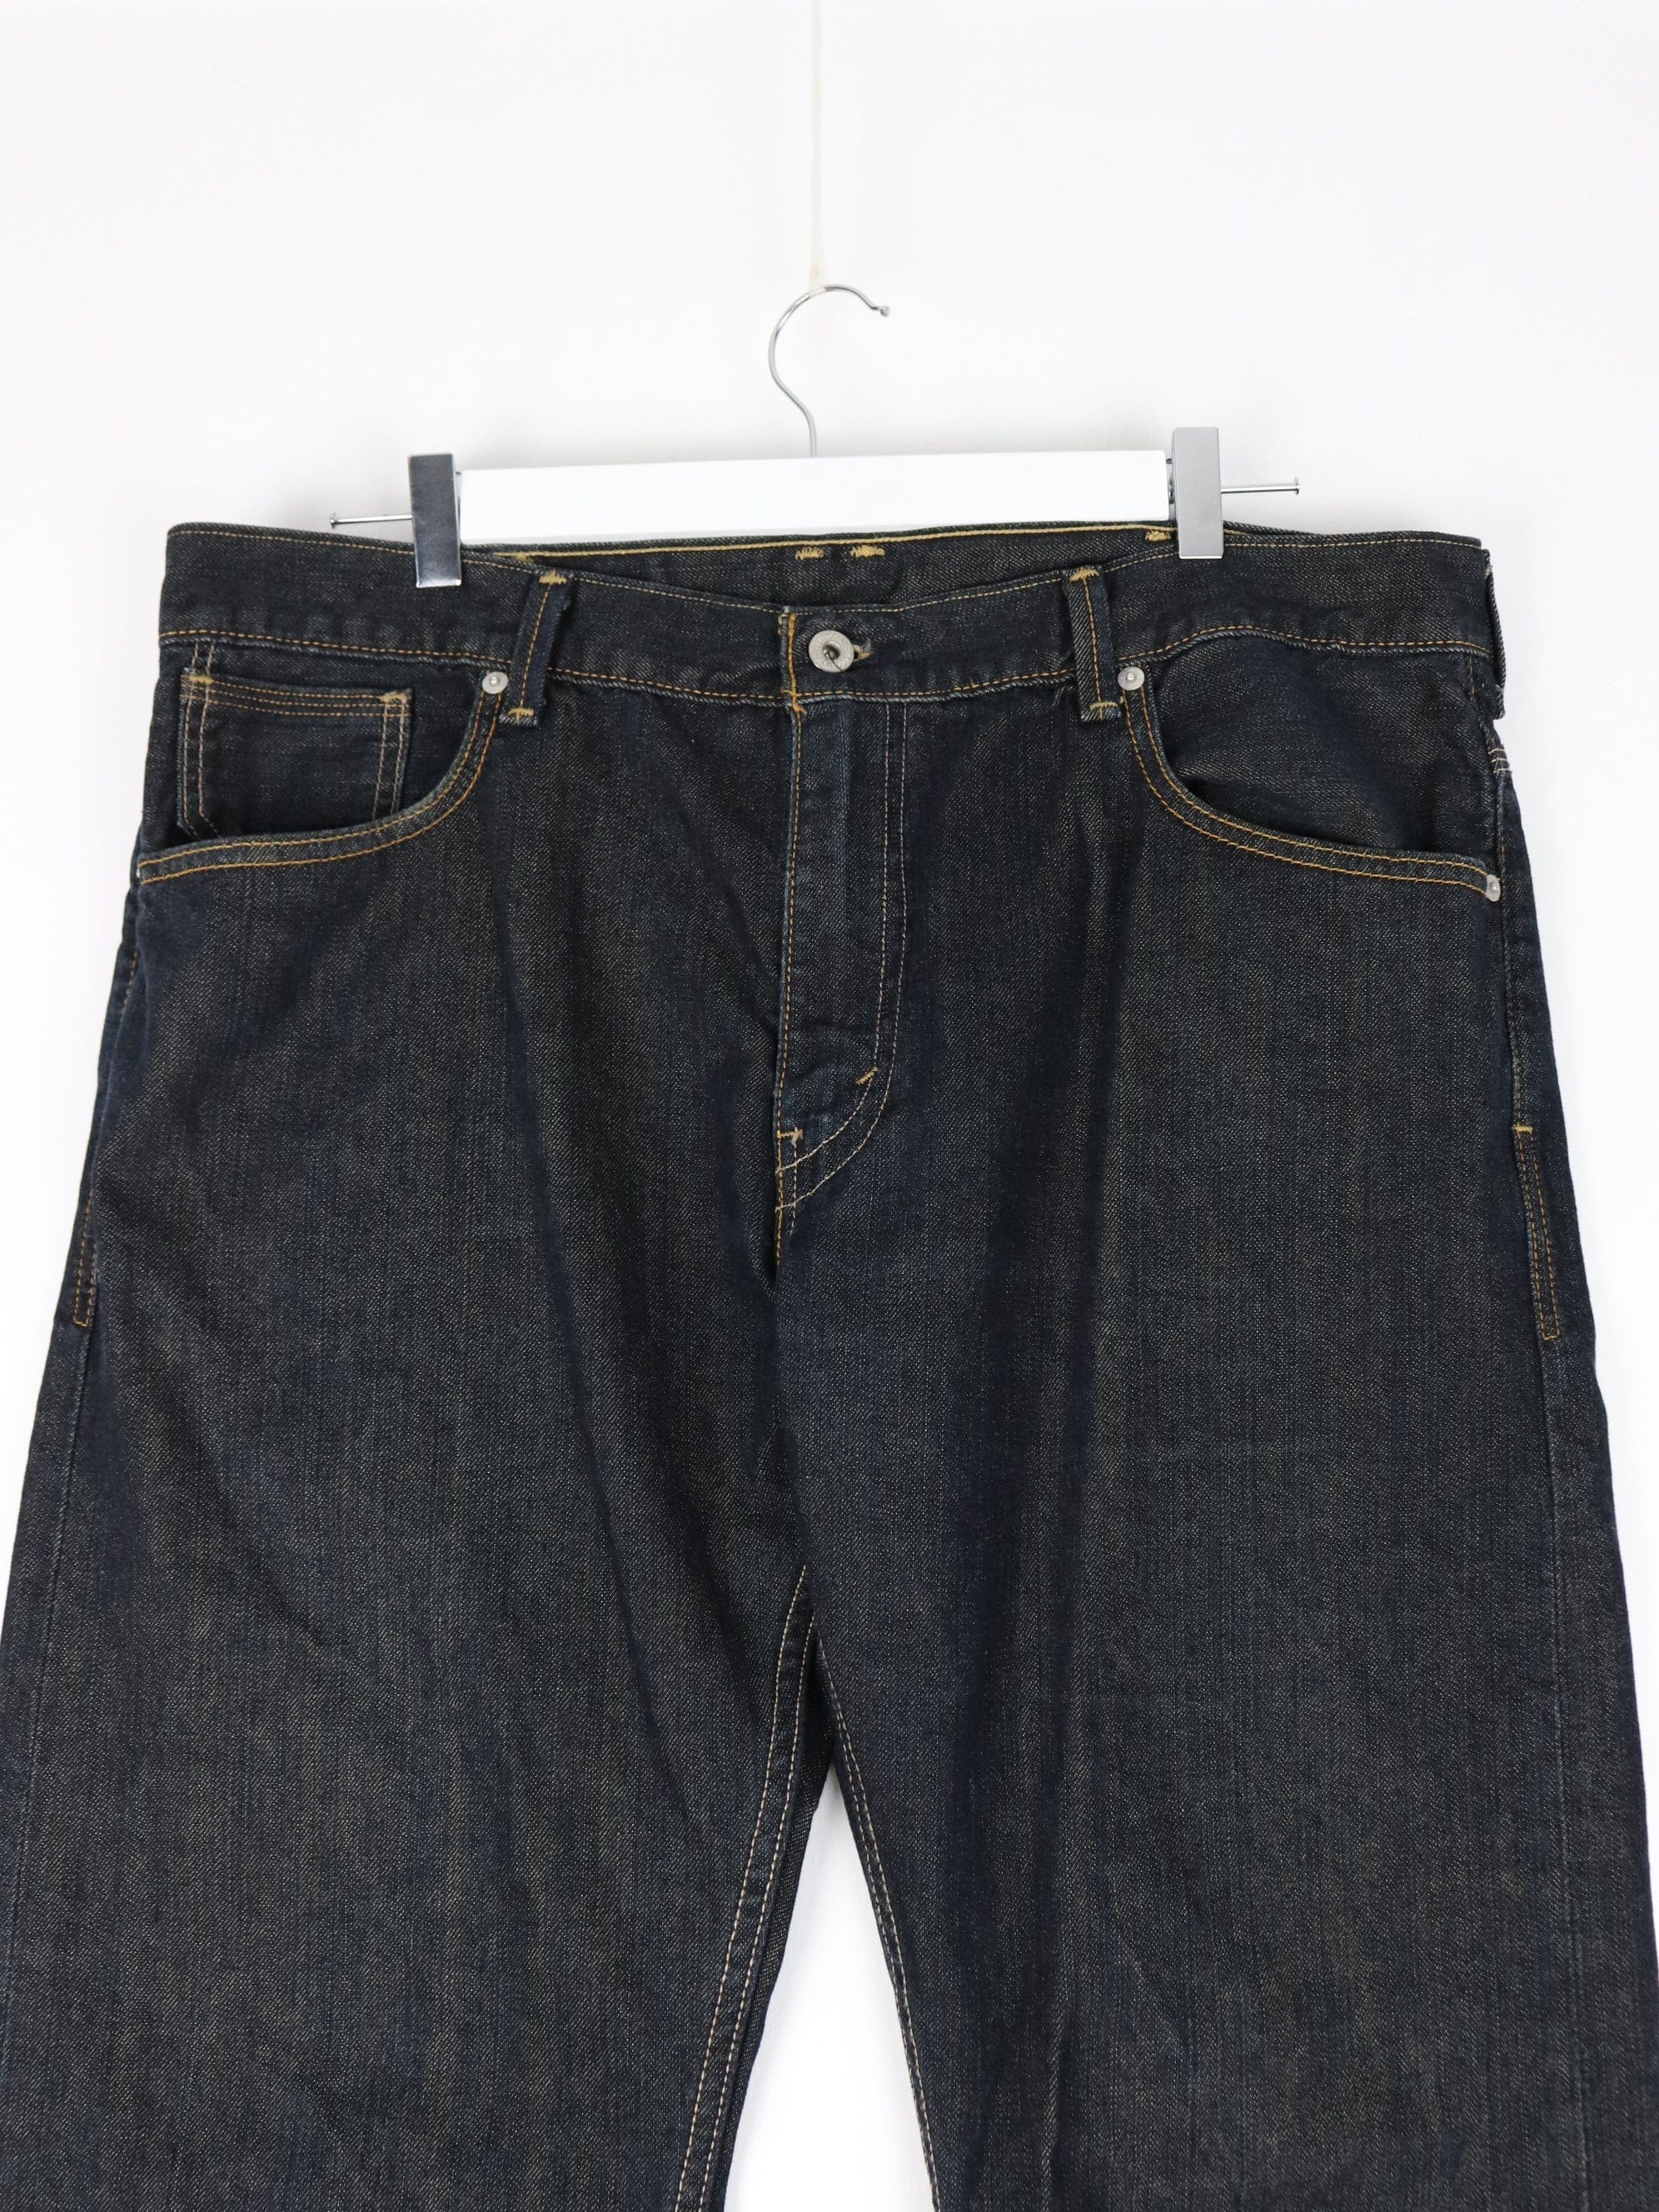 38 x 34 Pants & Jeans for Men